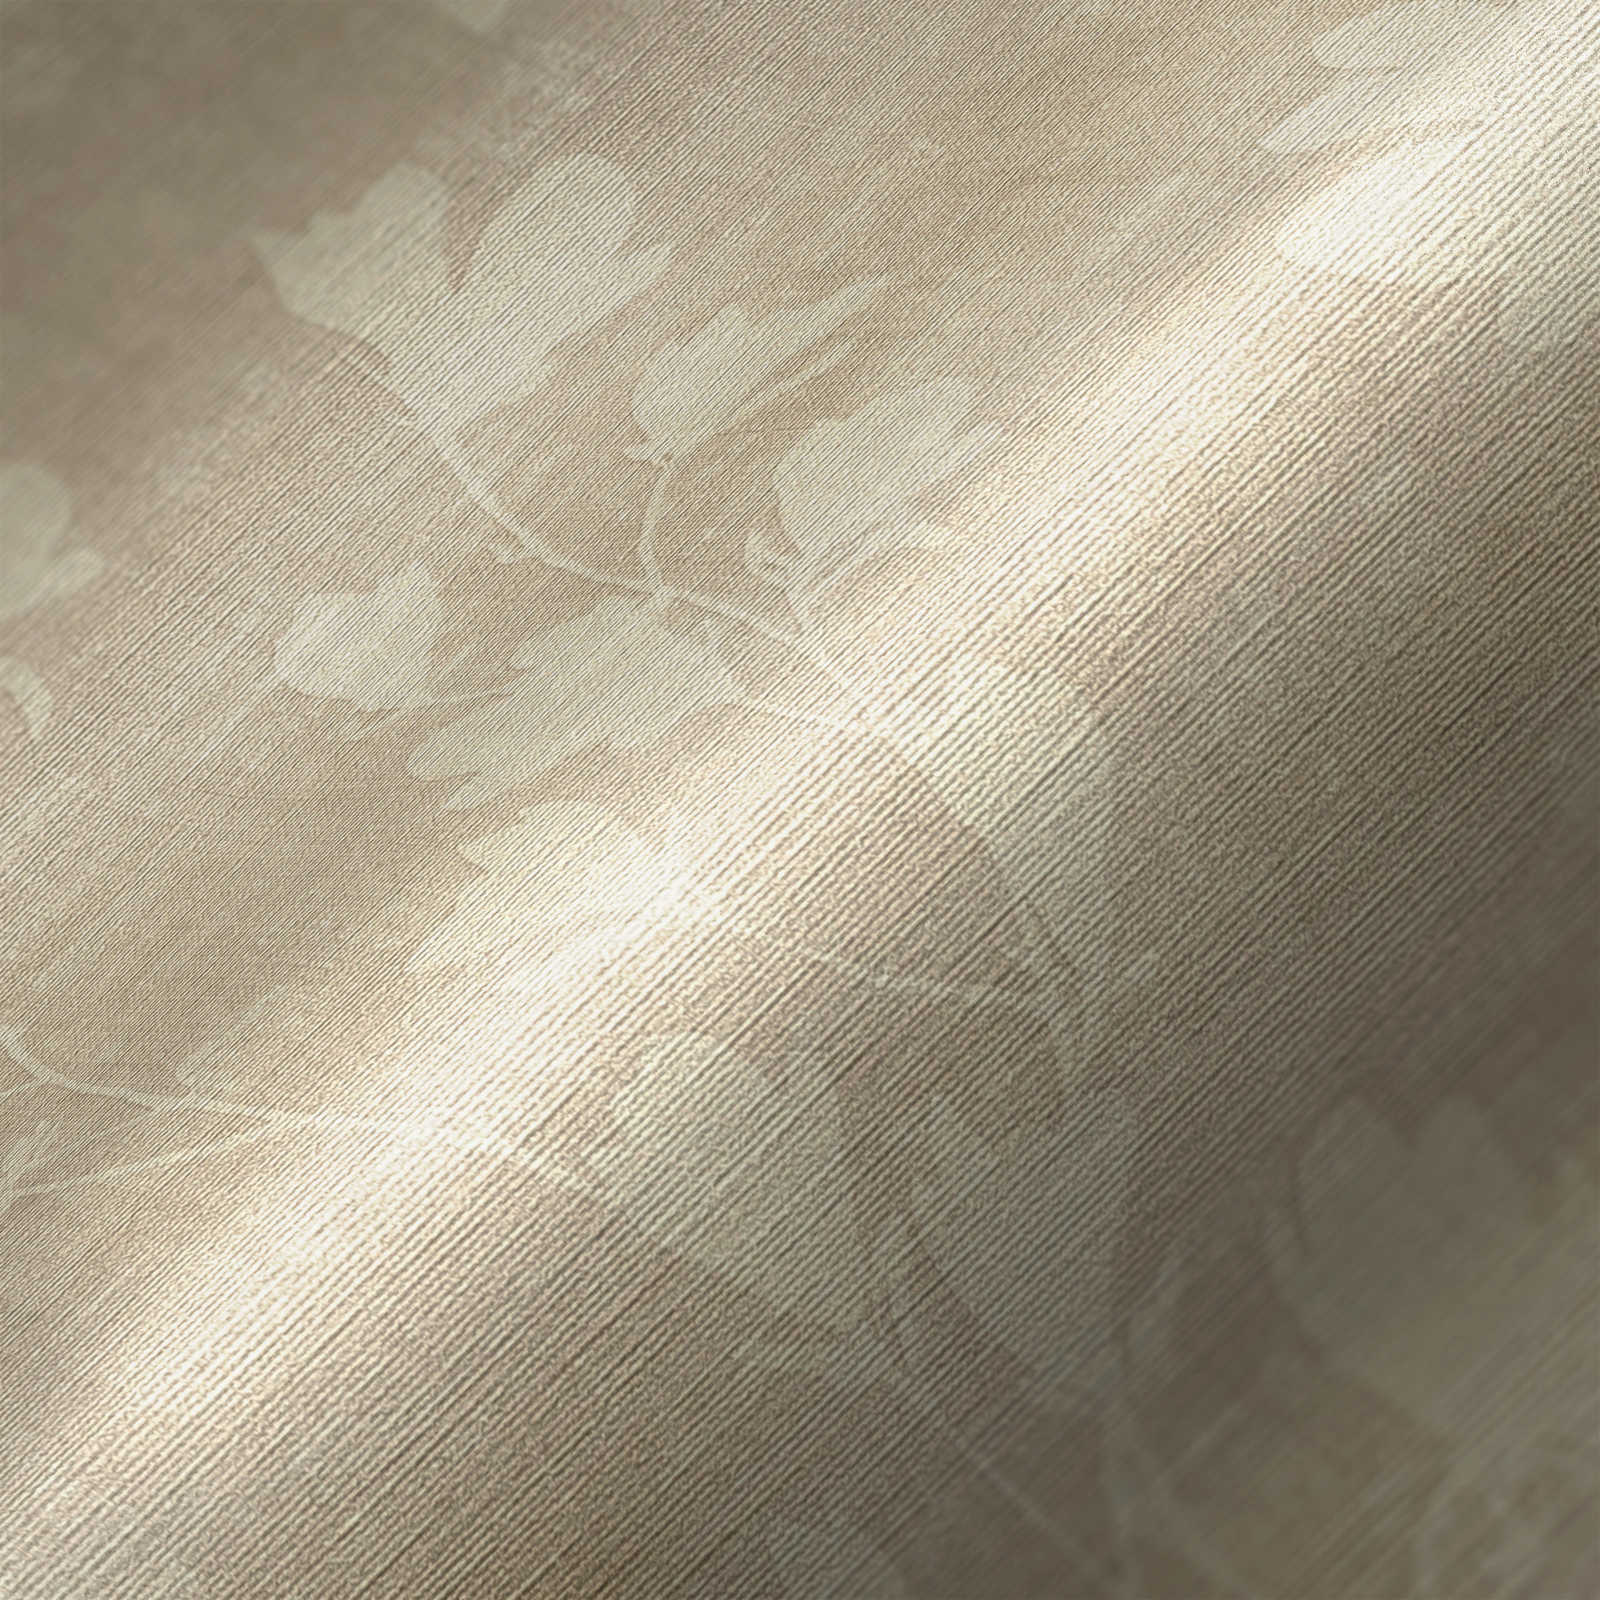             Papel pintado beige con motivos de hojas naturales
        